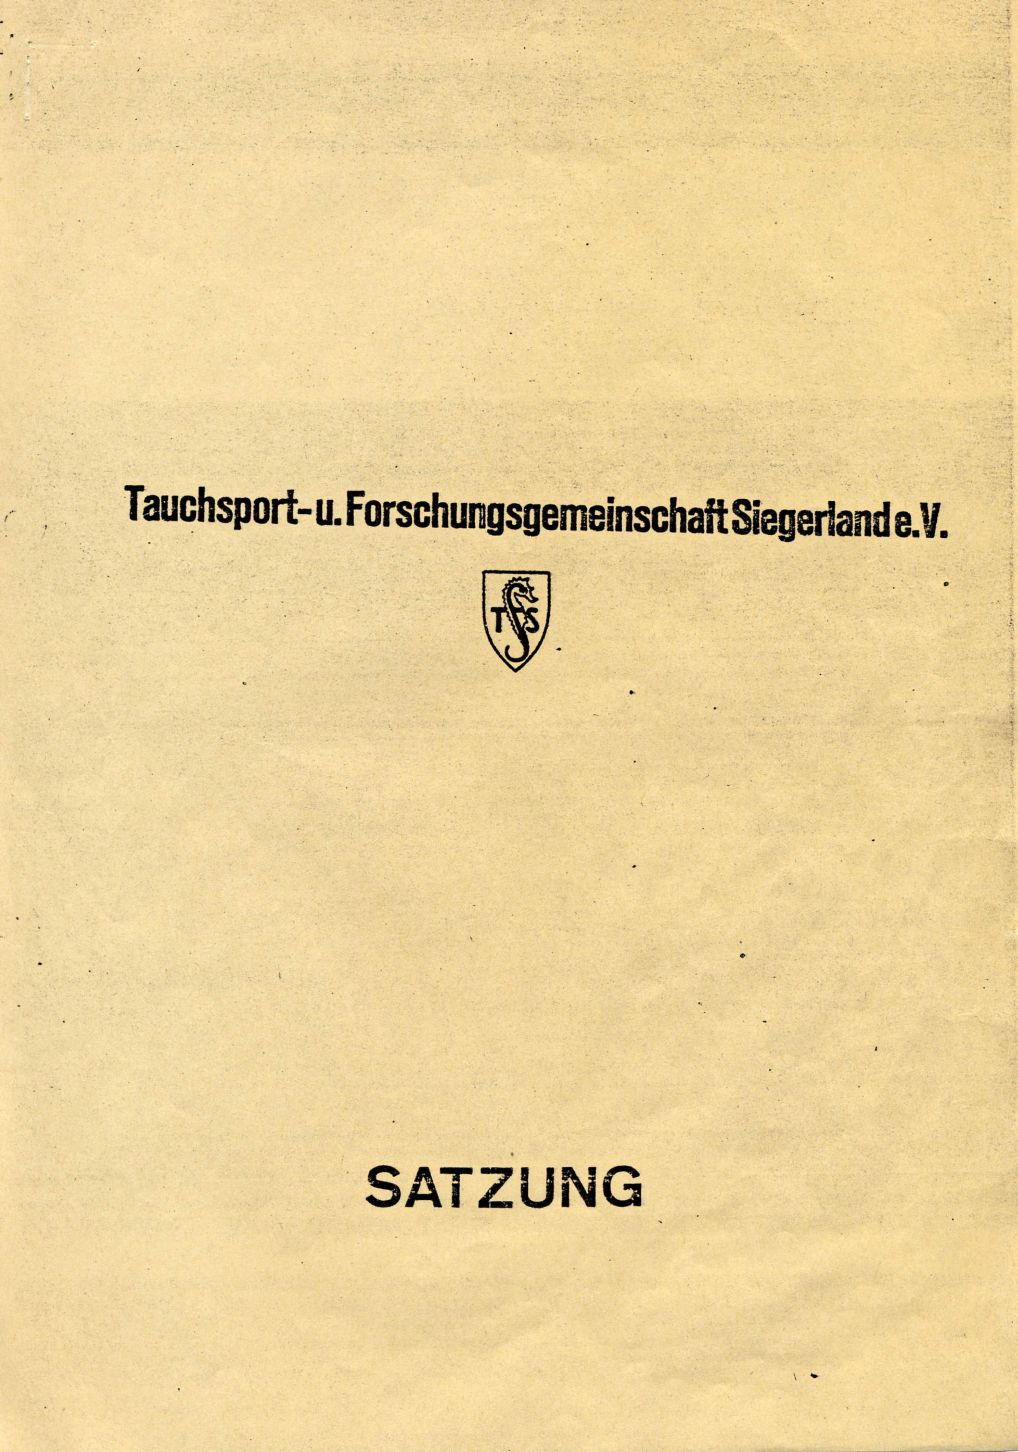 Satzung TFS 1980_03_21